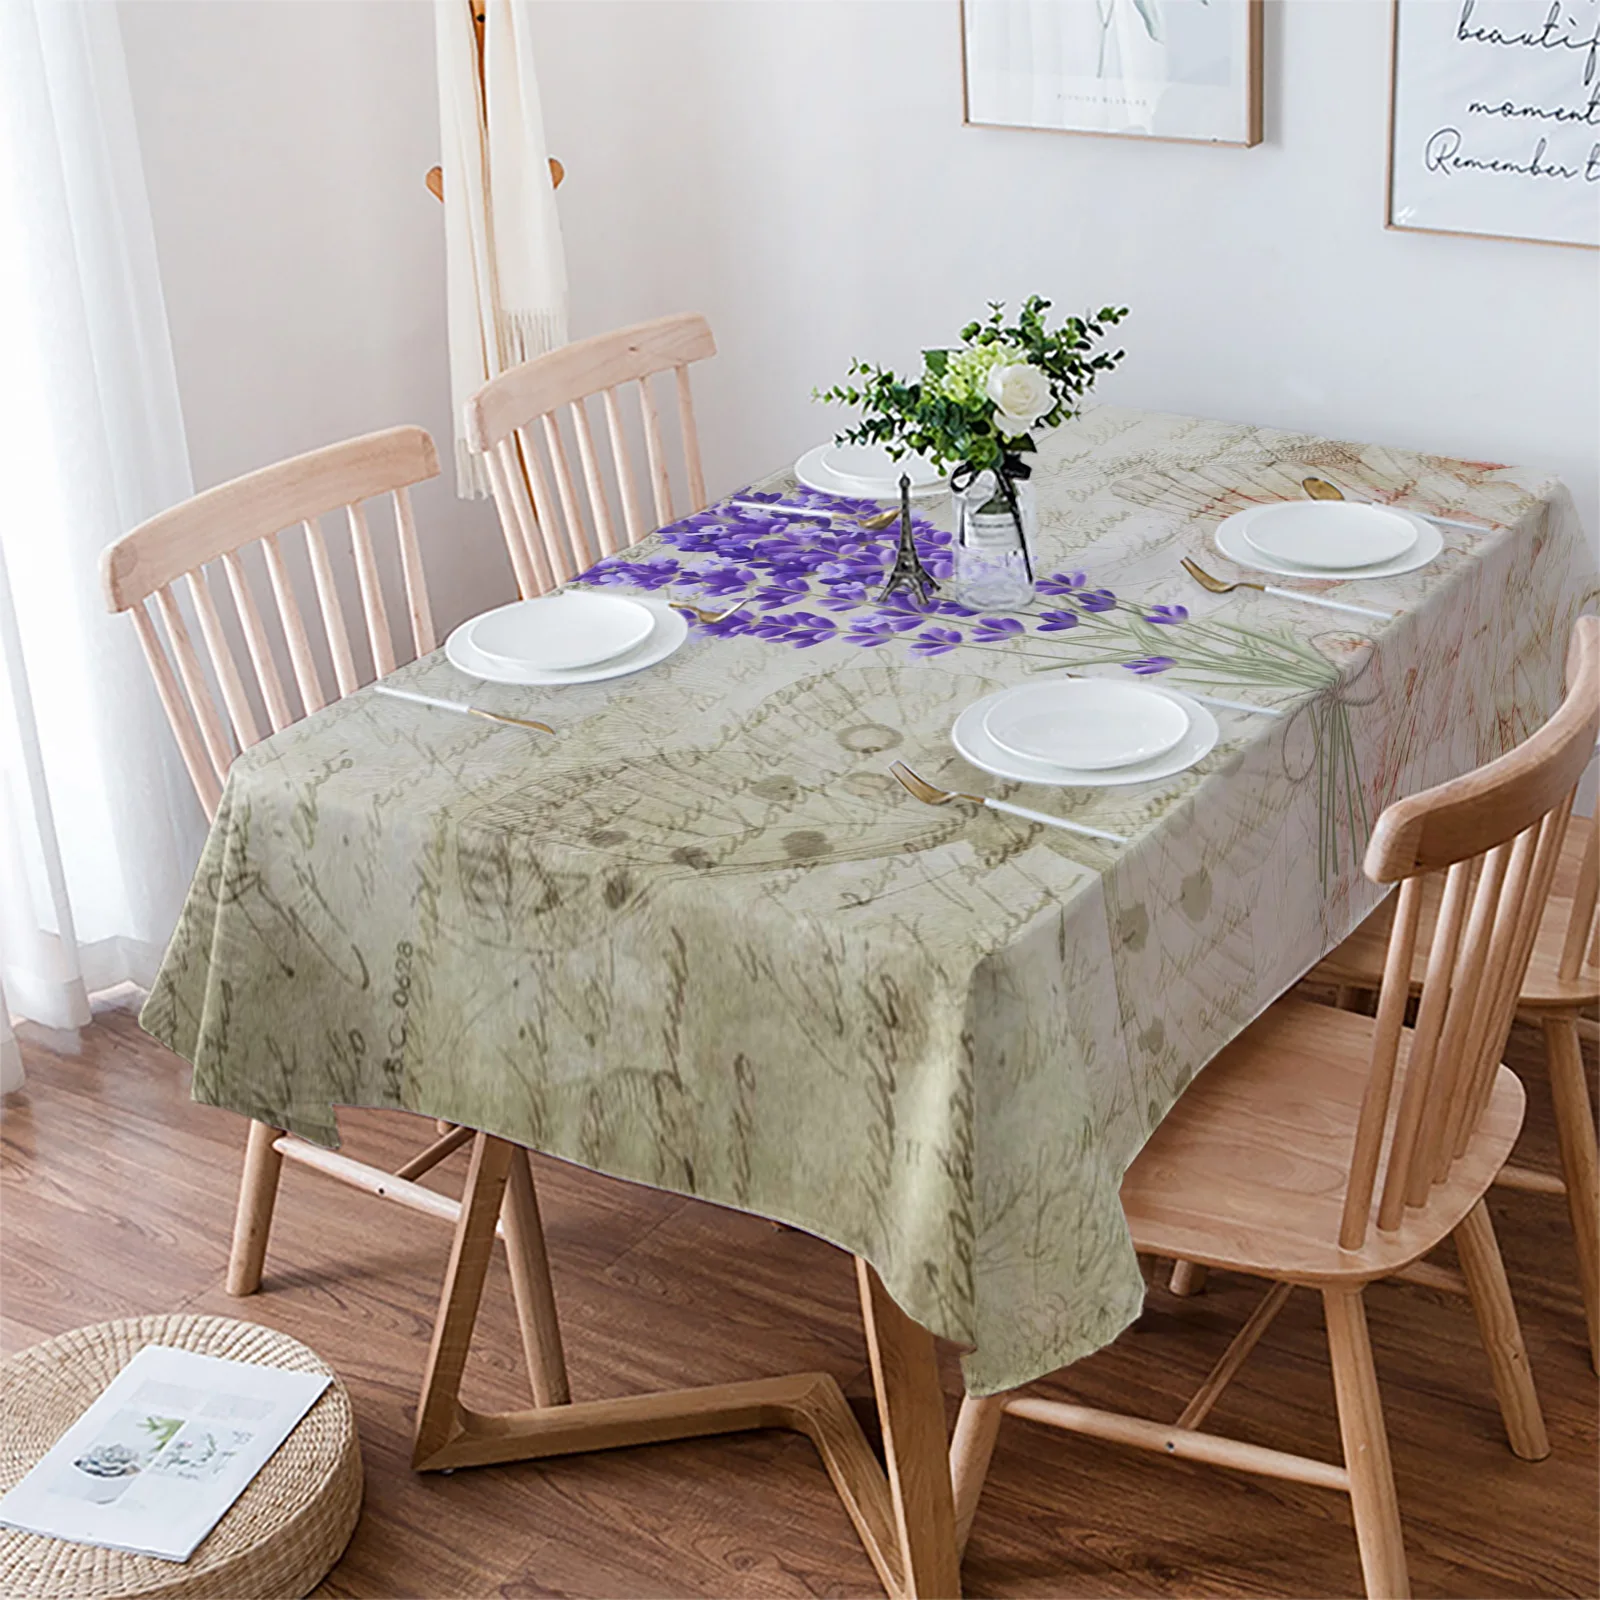 

Скатерть в винтажном стиле с изображением растений лаванды фиолетовых цветов бабочек, водонепроницаемая скатерть для обеденного стола, прямоугольная, круглая, украшение для дома и кухни